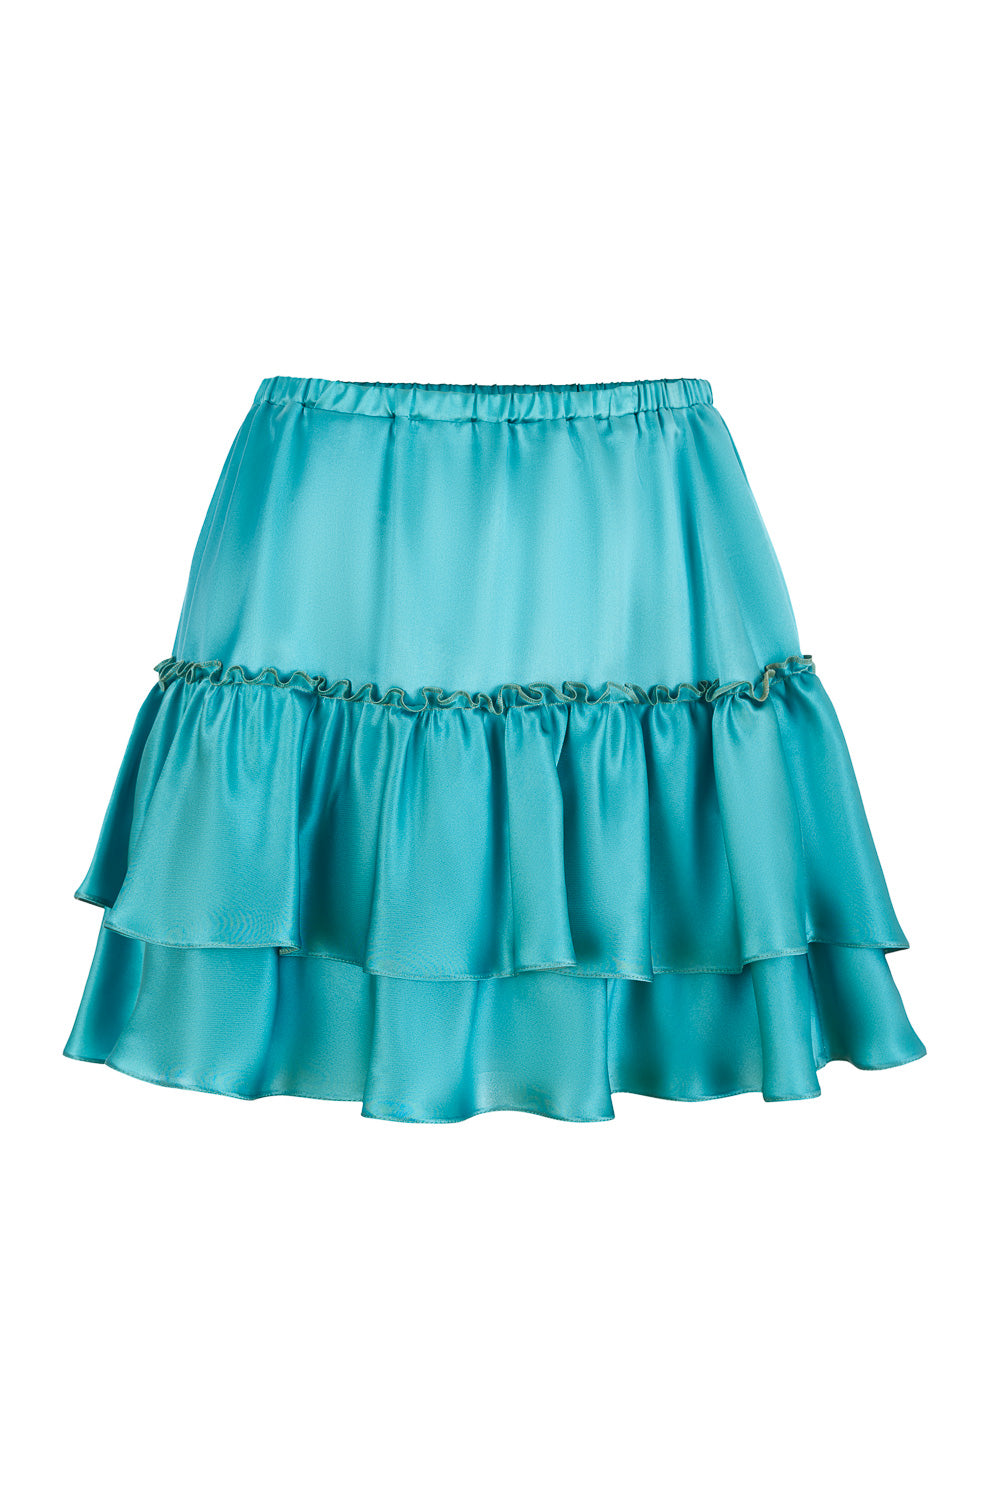 Short Silk Skirt with Ruffles in Ocean Blue